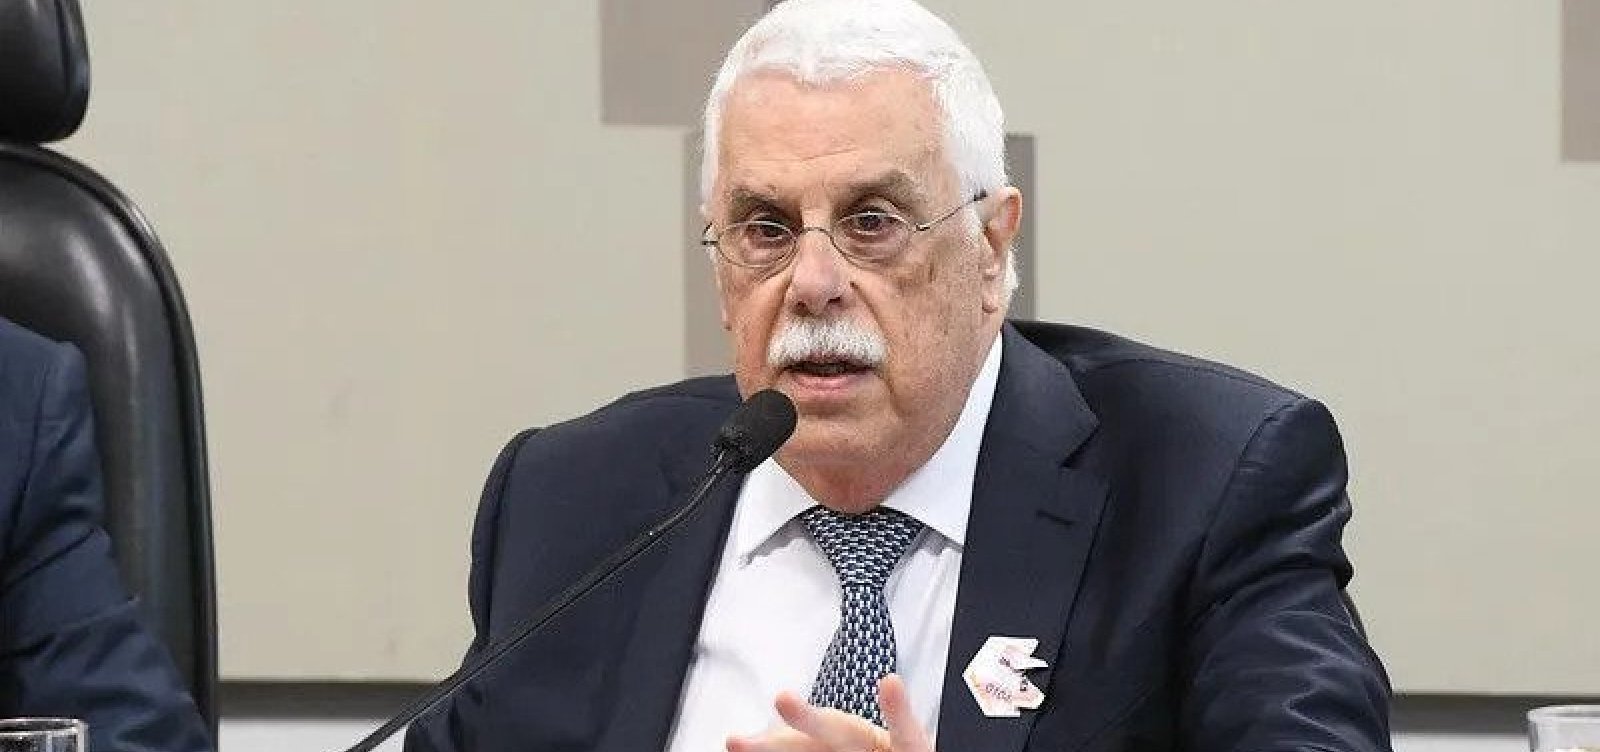 Morre  Affonso Celso Pastore, economista e ex-presidente do Banco Central